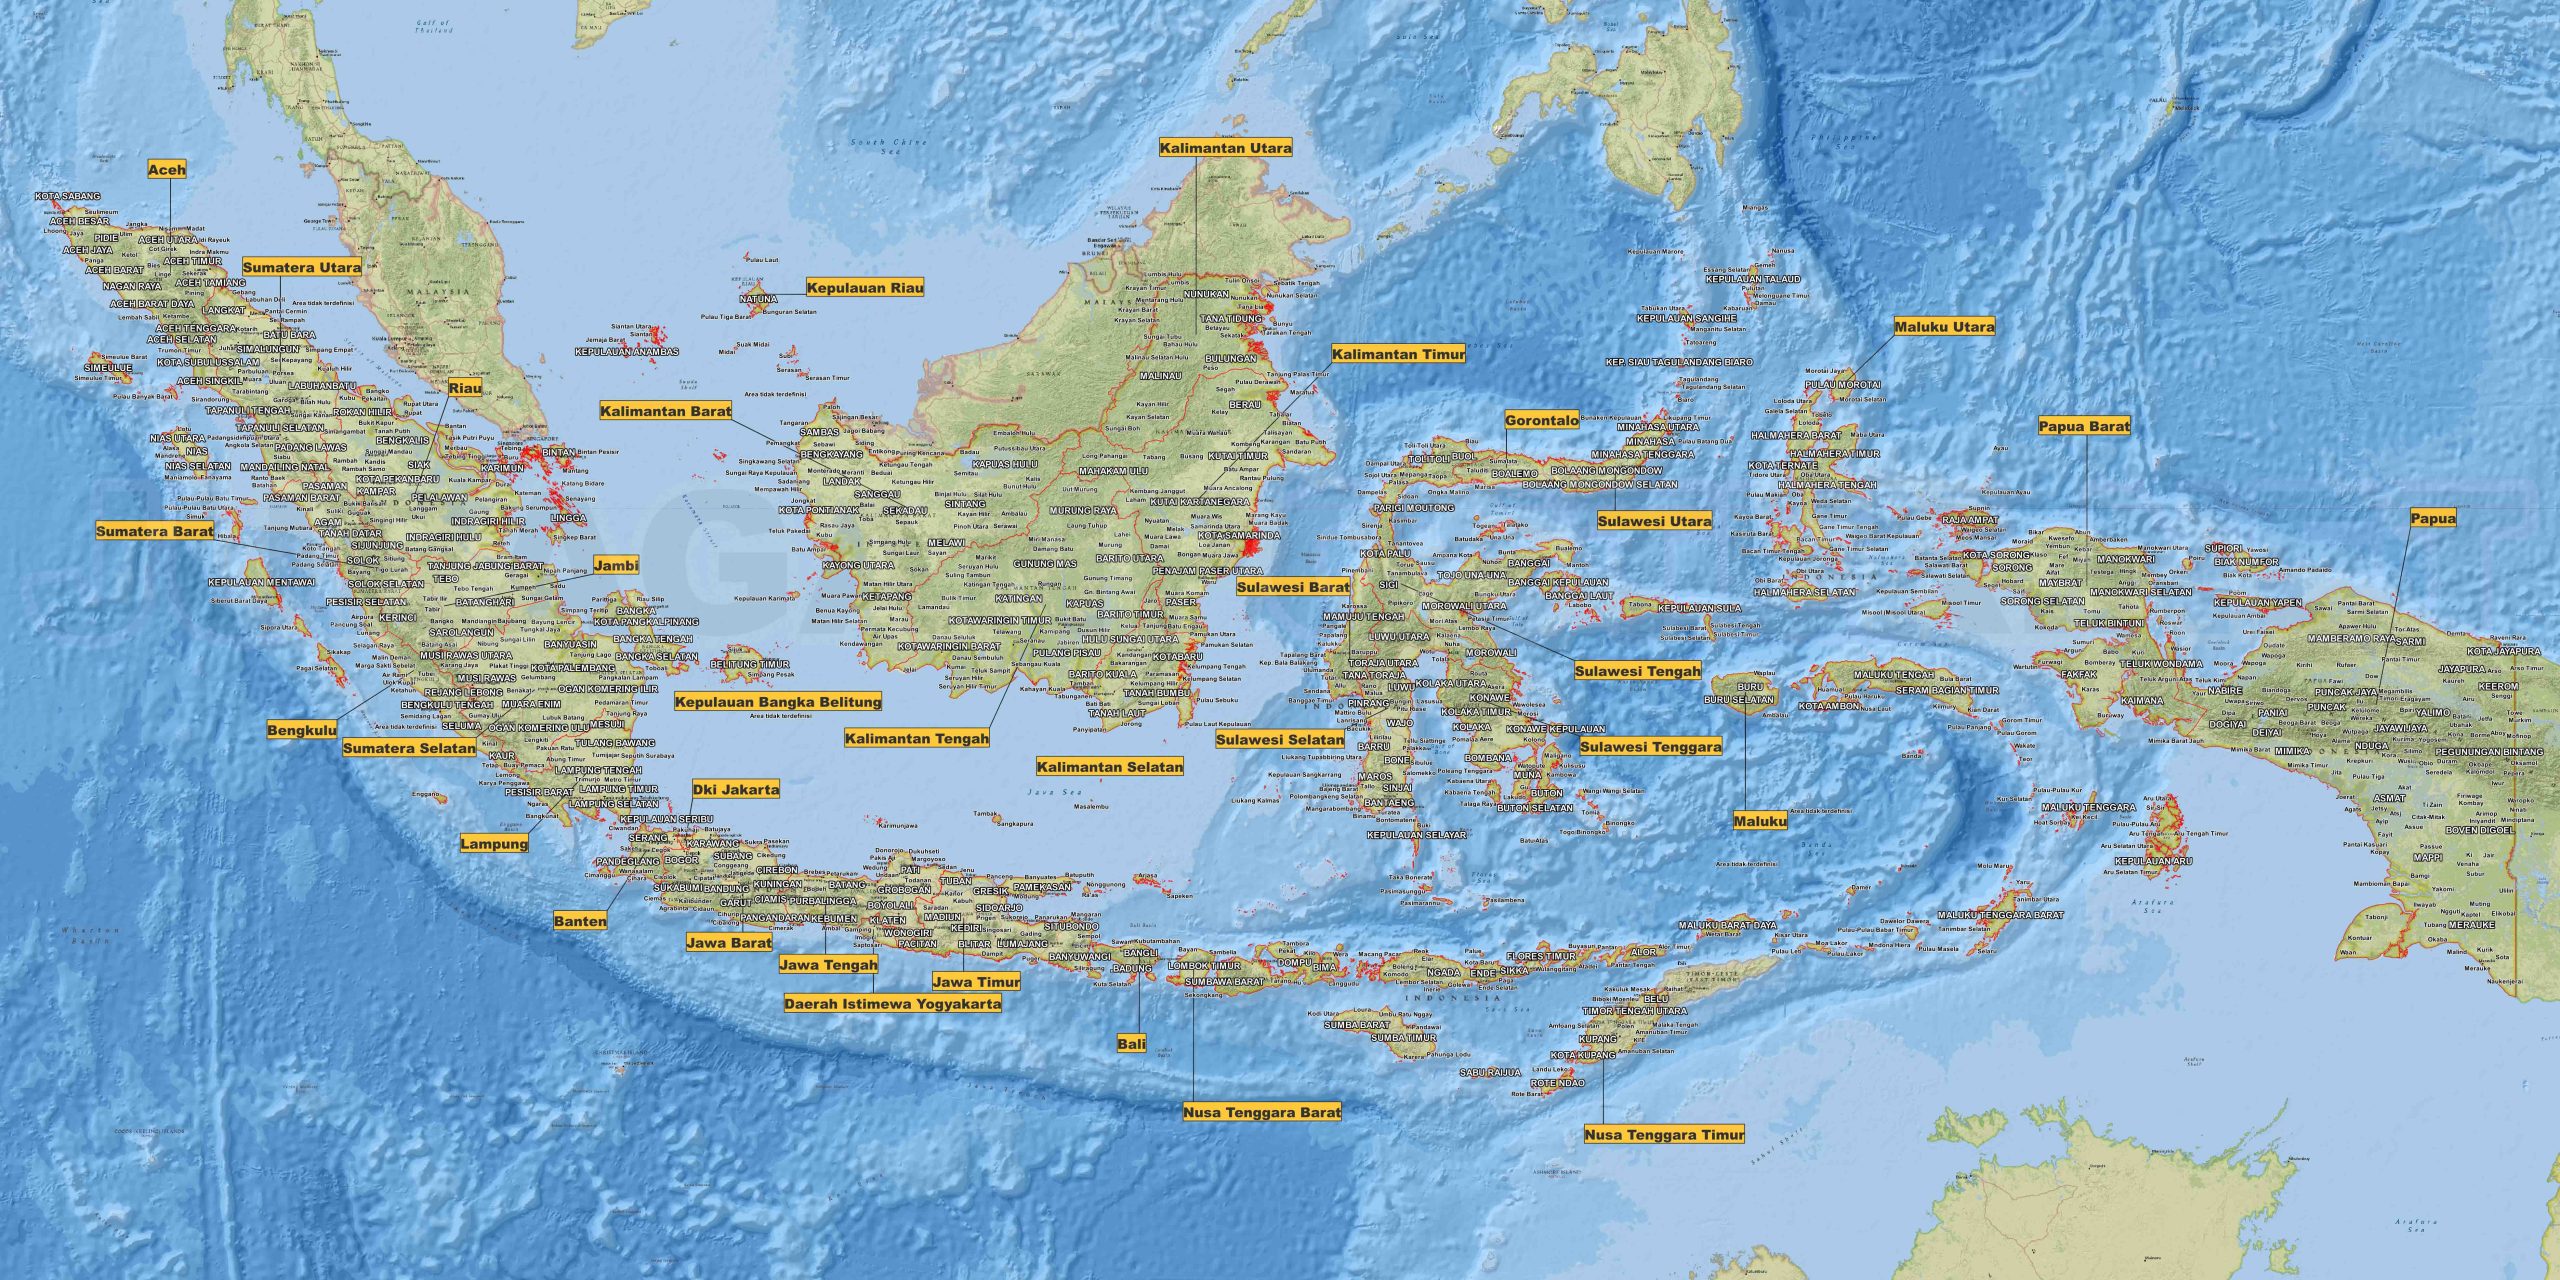 Peta Indonesia Lengkap: Rincian Seluruh Nusantara